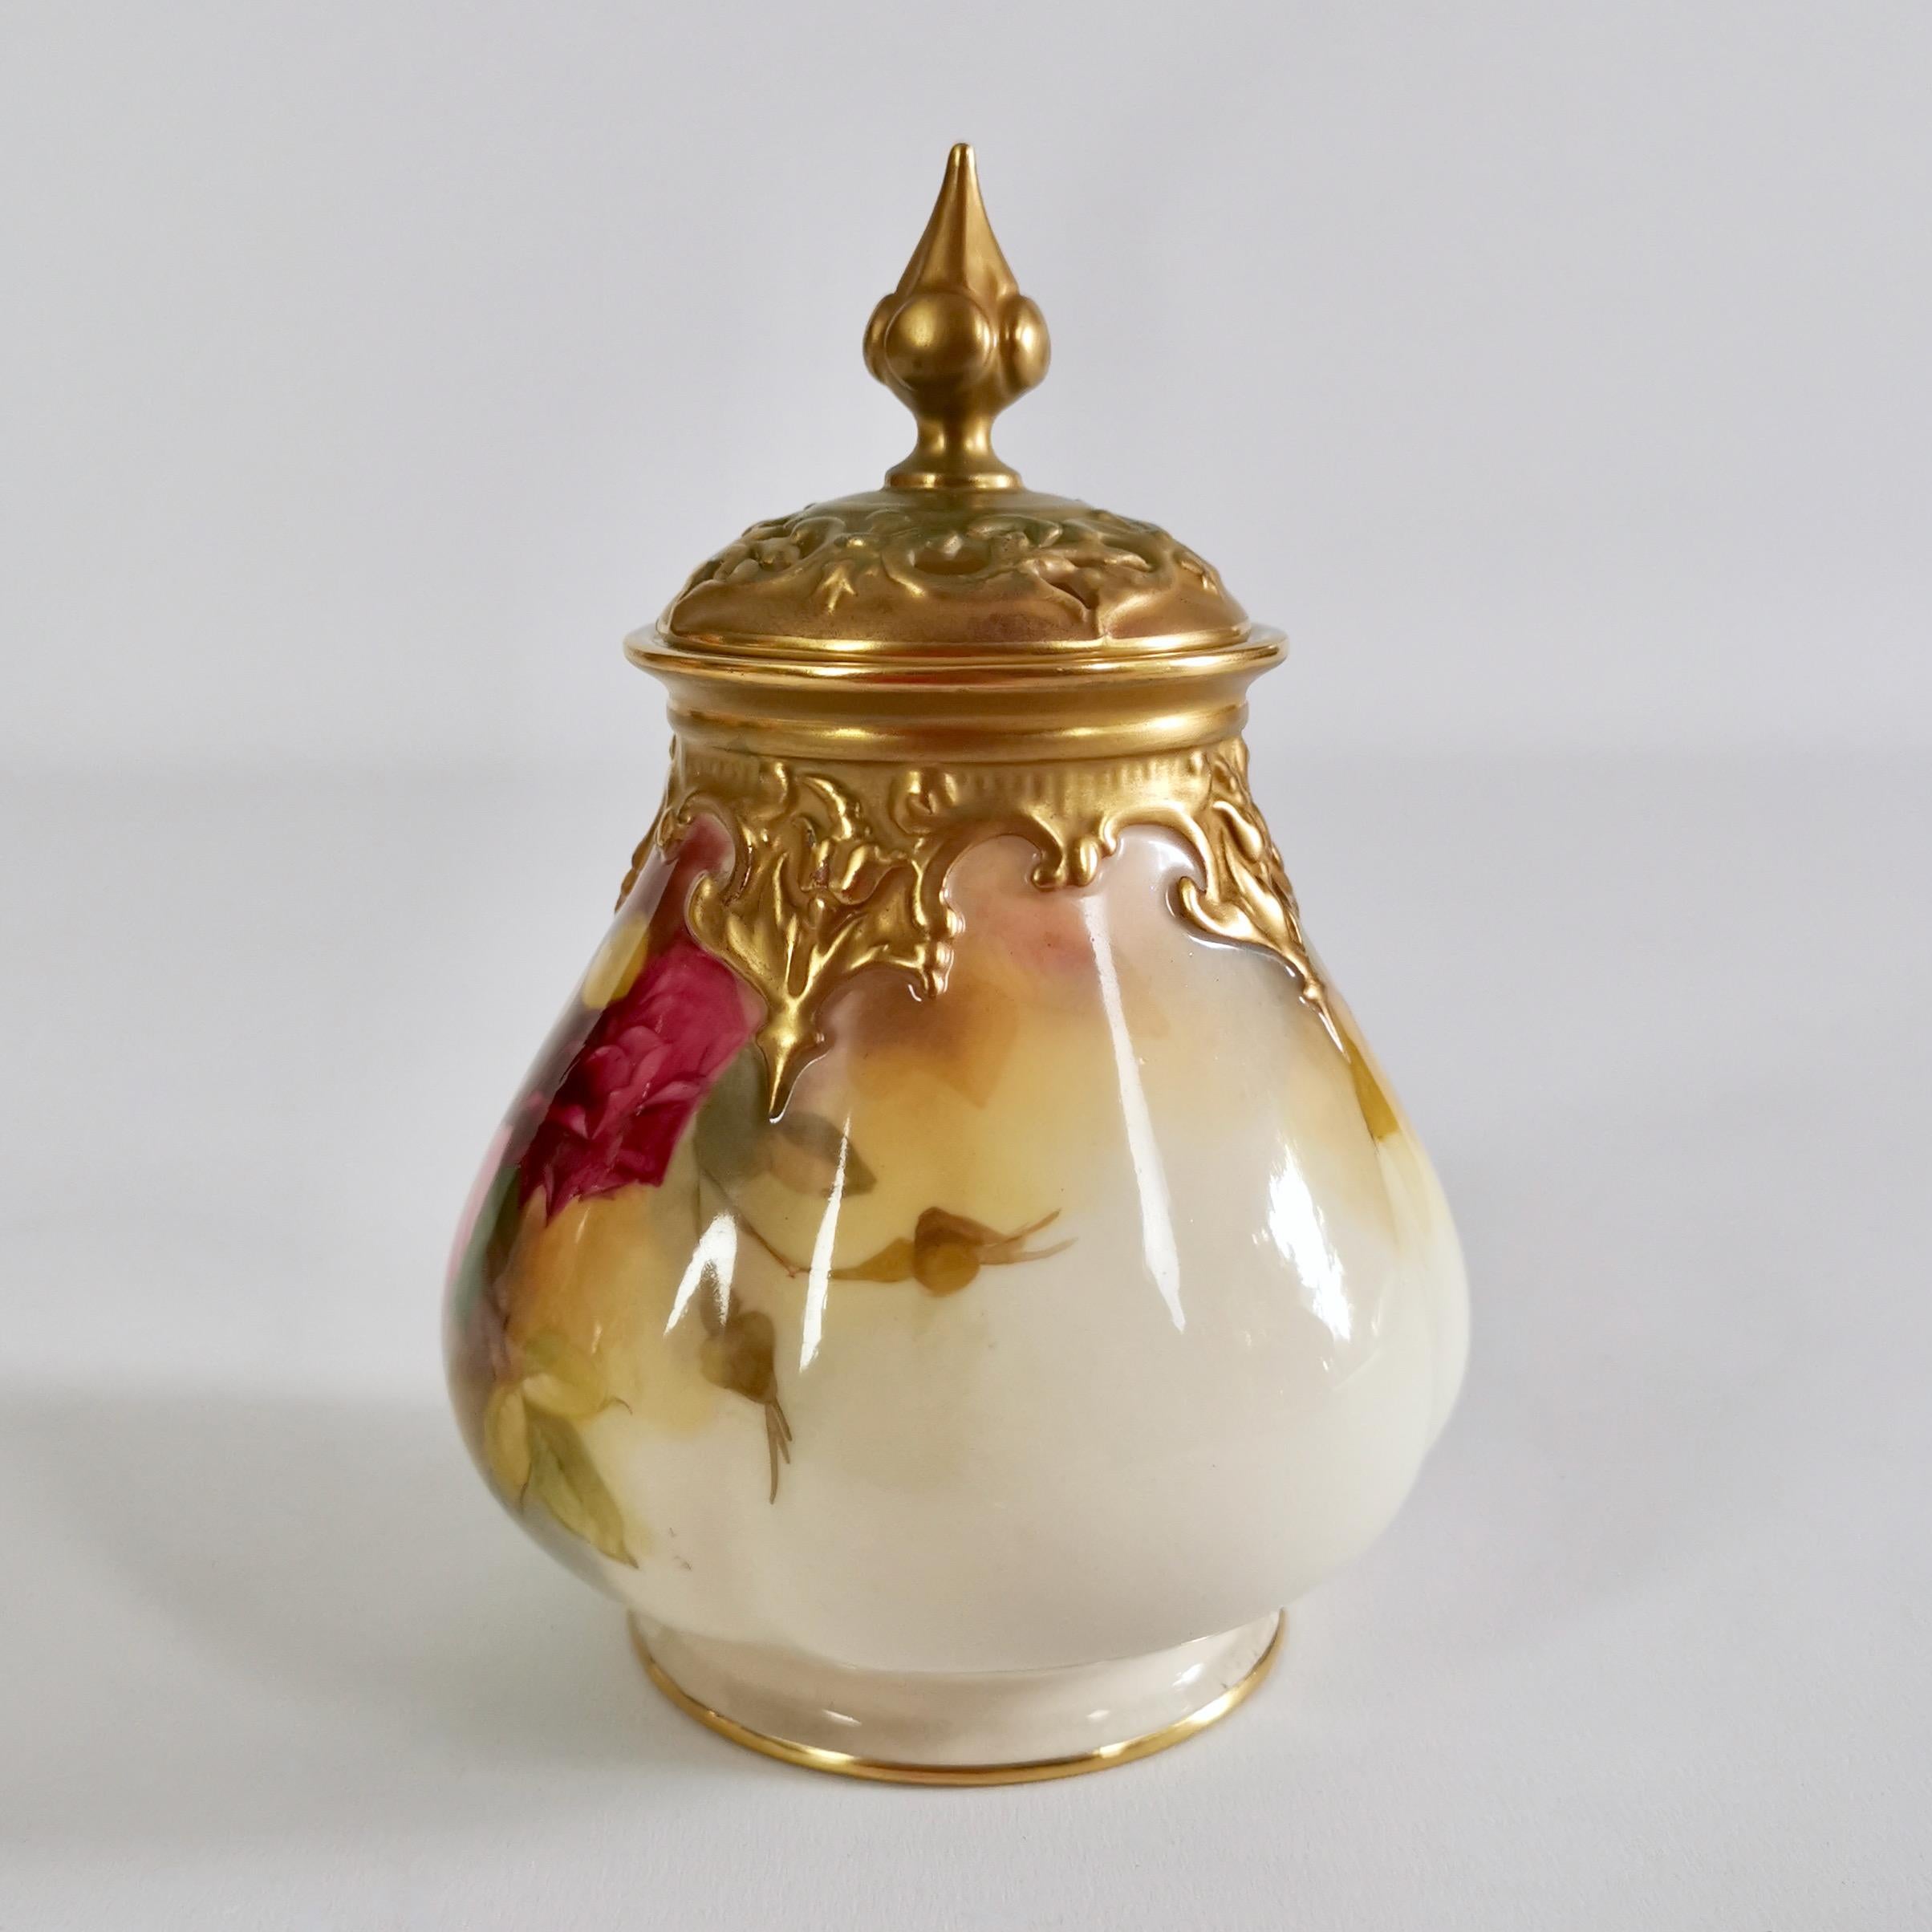 Dies ist eine sehr schöne kleine Potpourri-Vase mit Deckel von Royal Worcester aus dem Jahr 1923. Die Urne hat einen elfenbeinfarbenen Grund mit außergewöhnlich schönen handgemalten Hadley-Rosen.

Potpourri-Vasen dienten dazu, eine Mischung aus